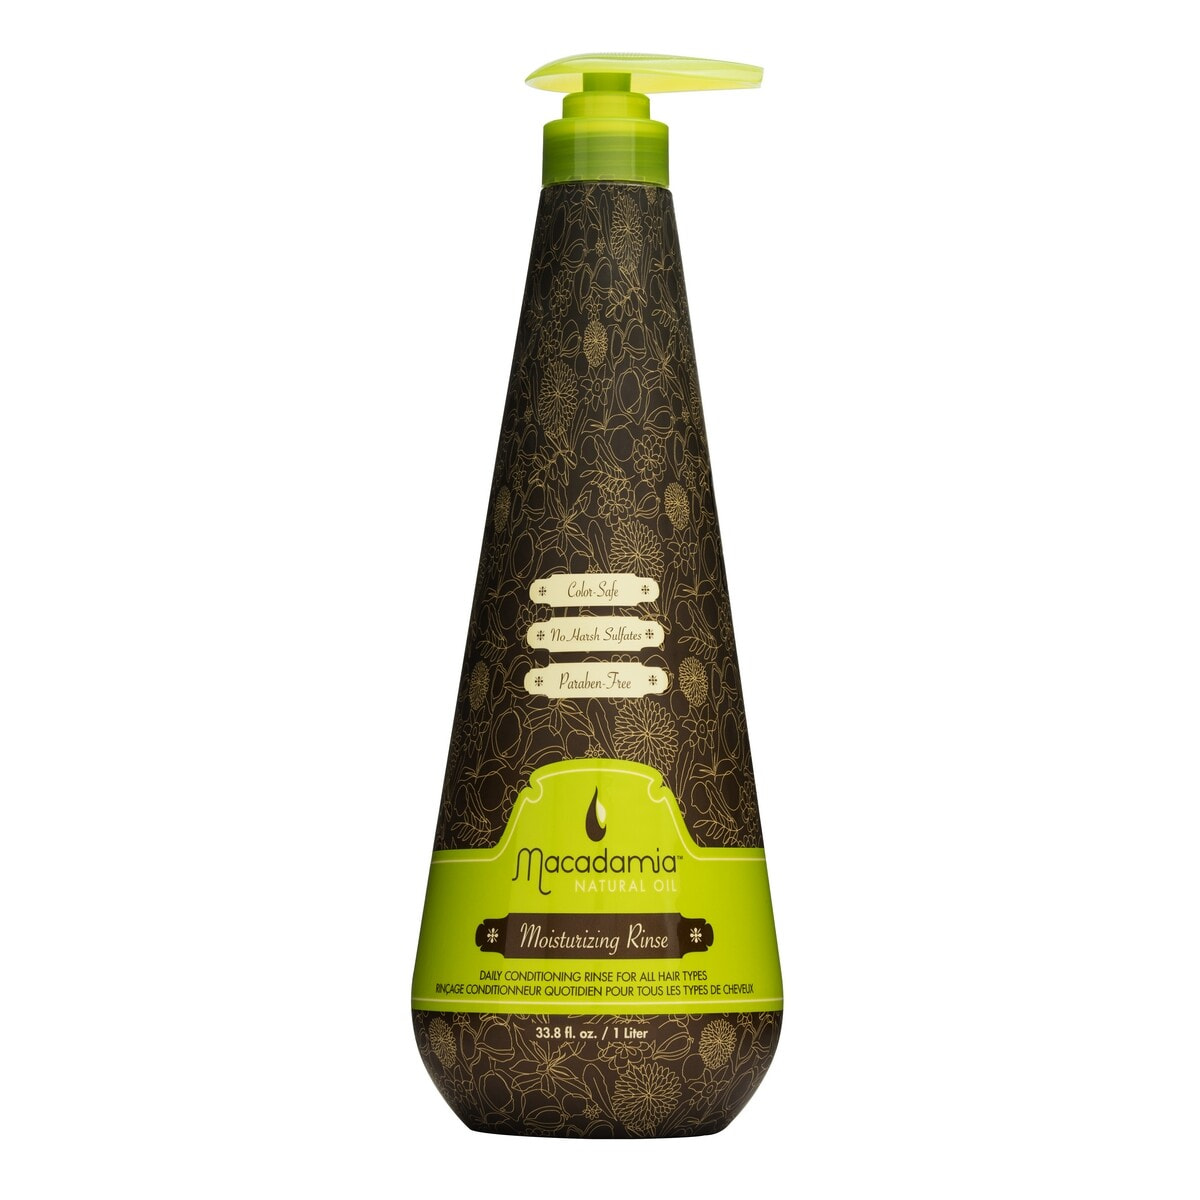 Macadamia Moisturizing Rinse Conditioner Увлажняющий кондиционер с маслом макадами для всех типов волос